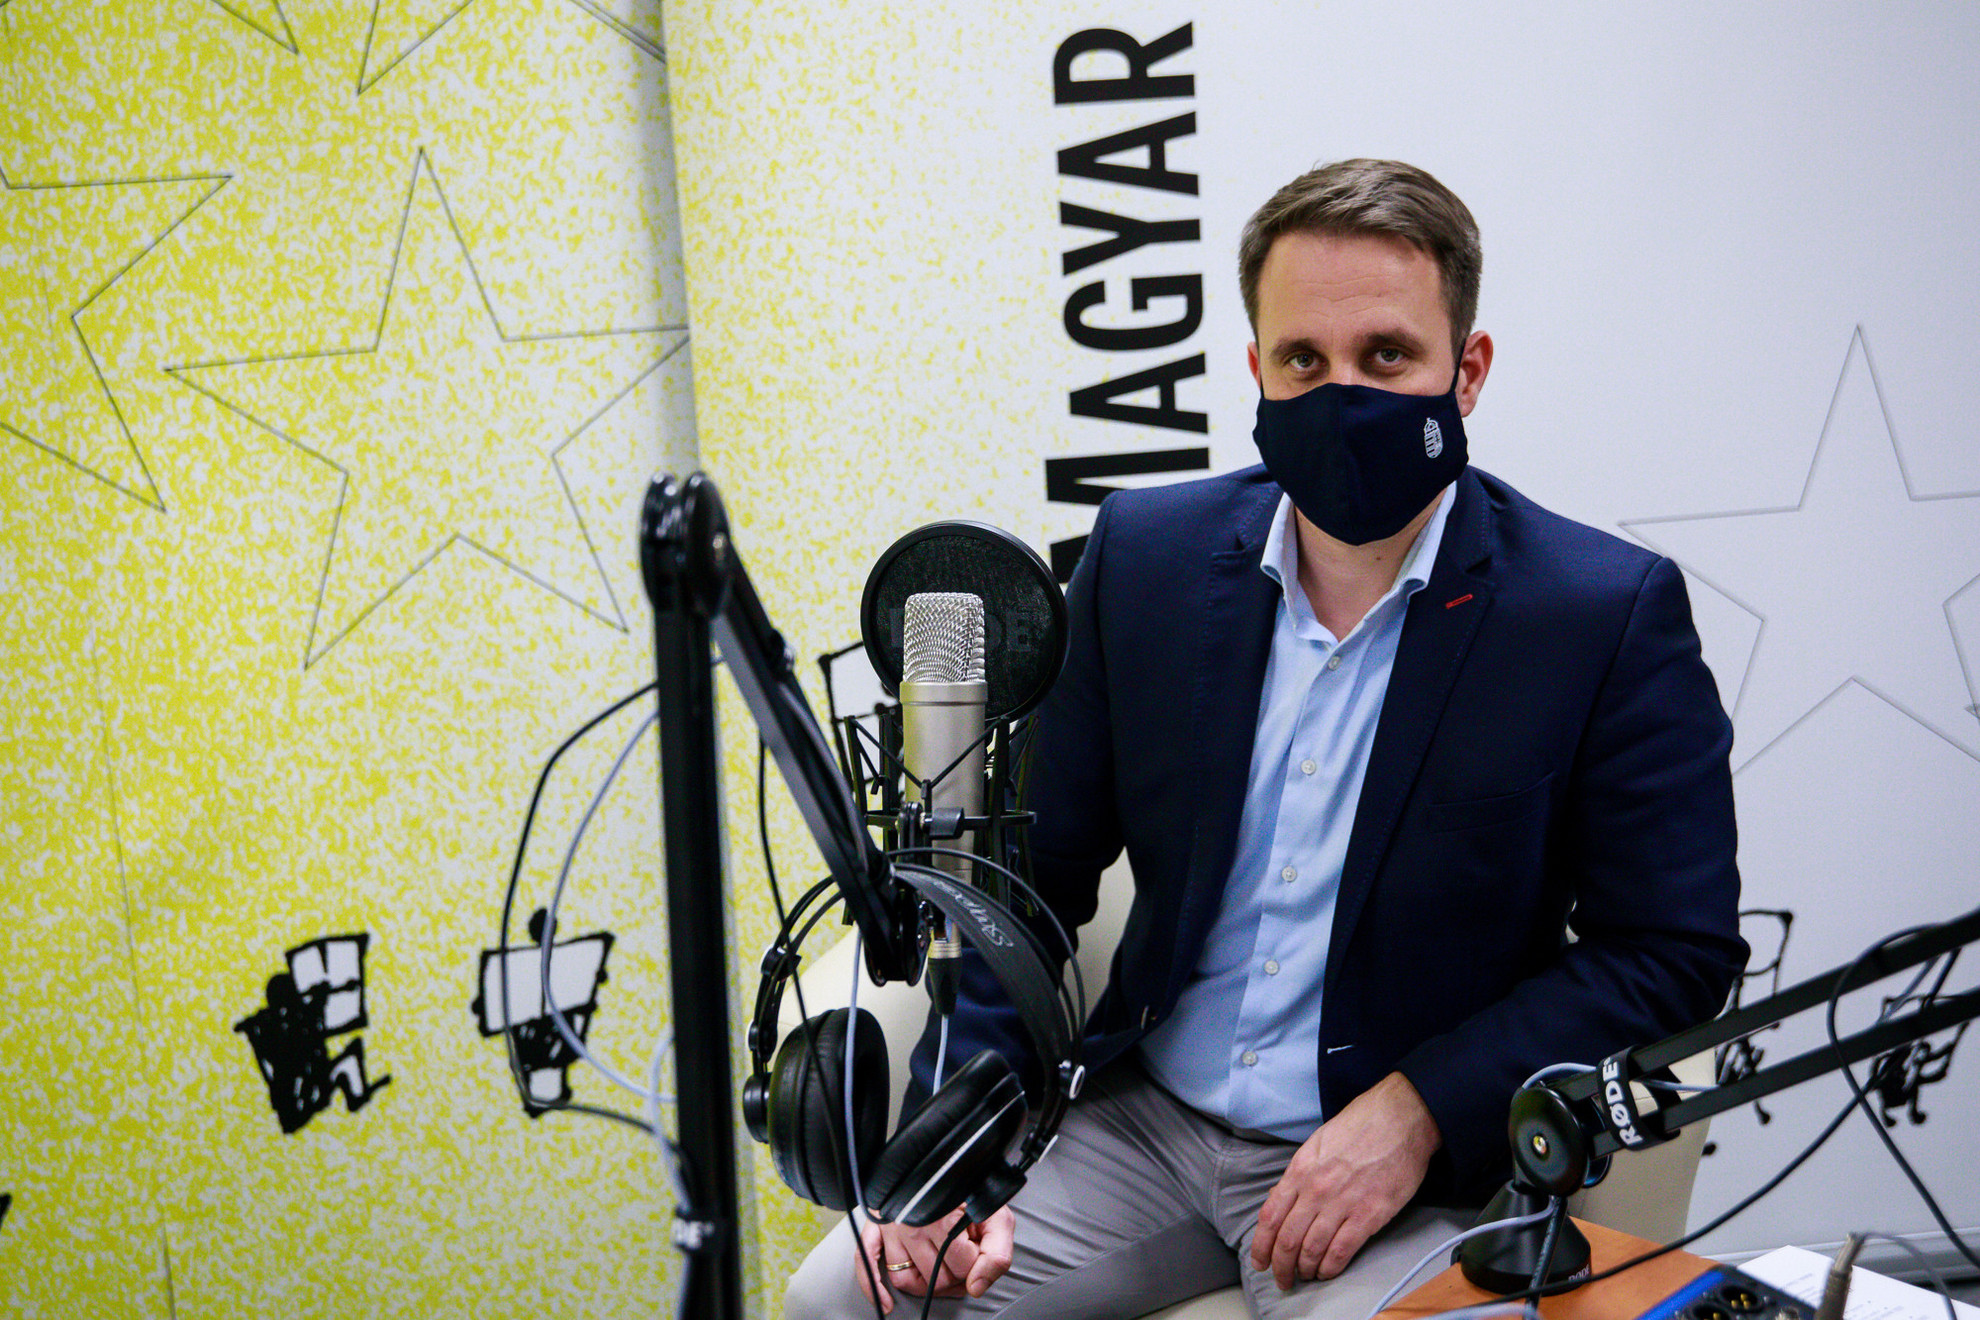 Államtitkár a maszk mögött - Dömötör Csaba a Magyar Hírlap Faktum című podcastjának felvételén